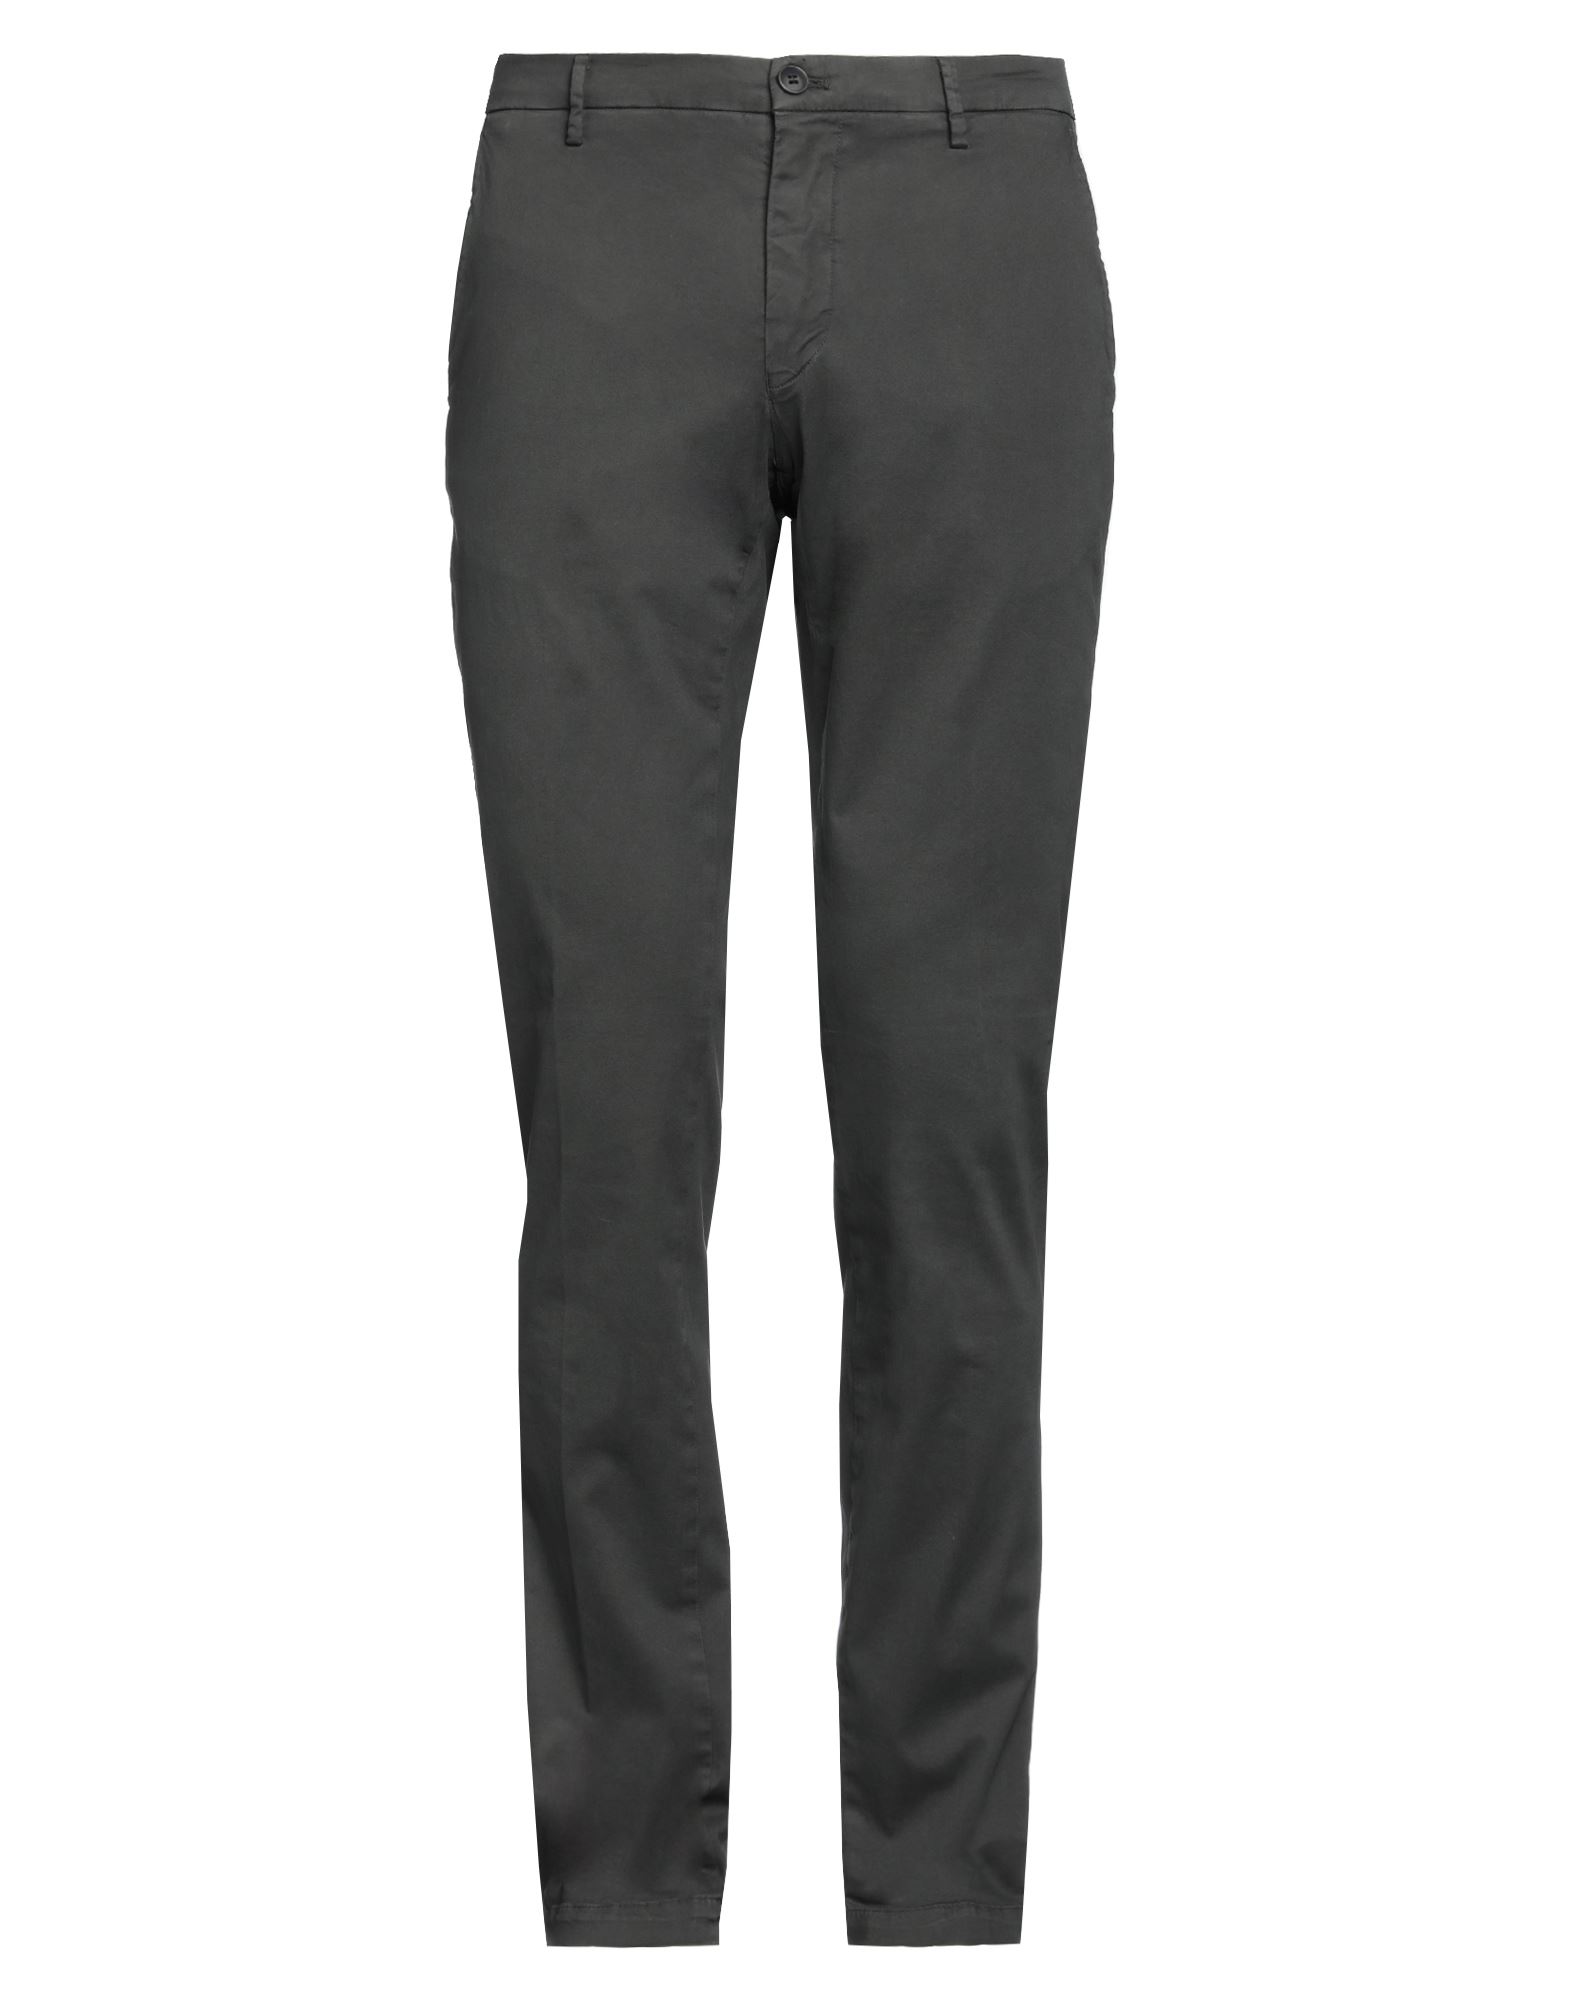 Mason's Man Pants Steel Grey Size 38 Cotton, Elastane In Lead